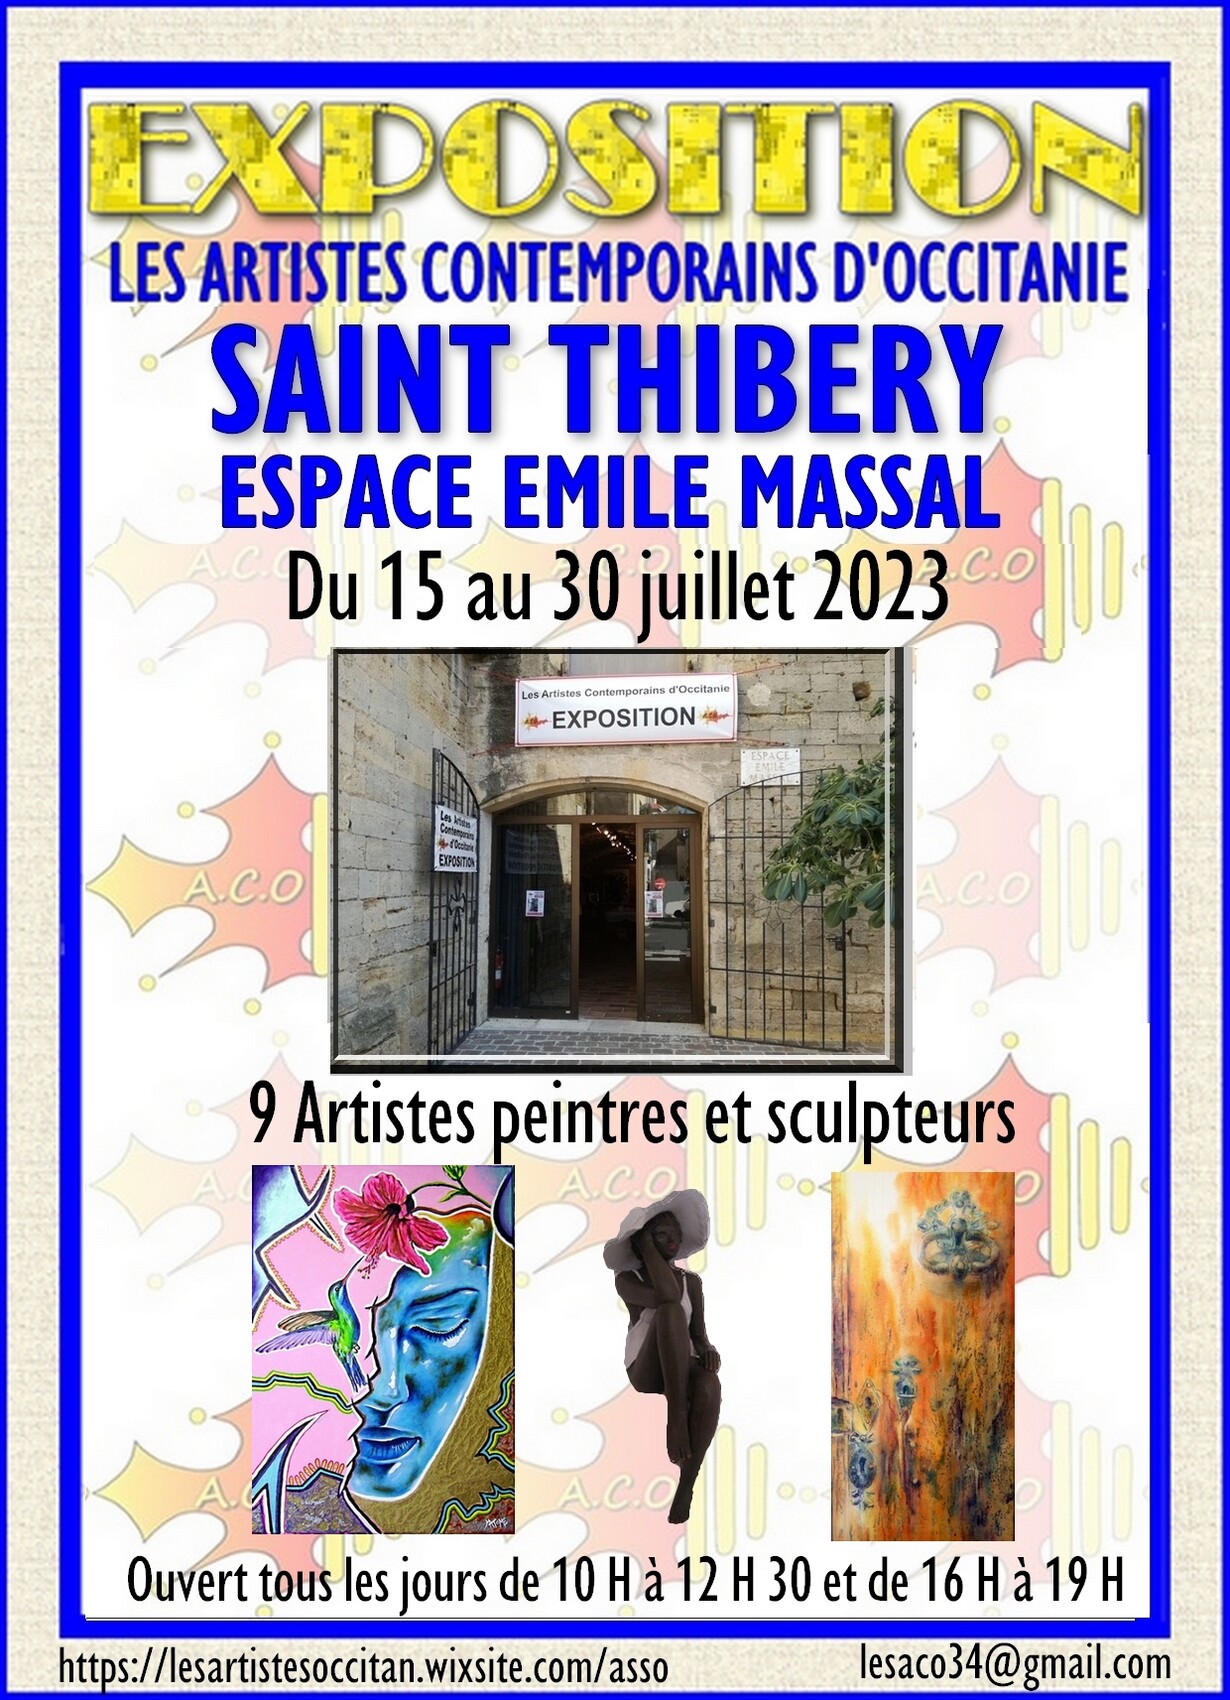 Expo Artistique de l'association «Les artistes contemporains d'occitanie»